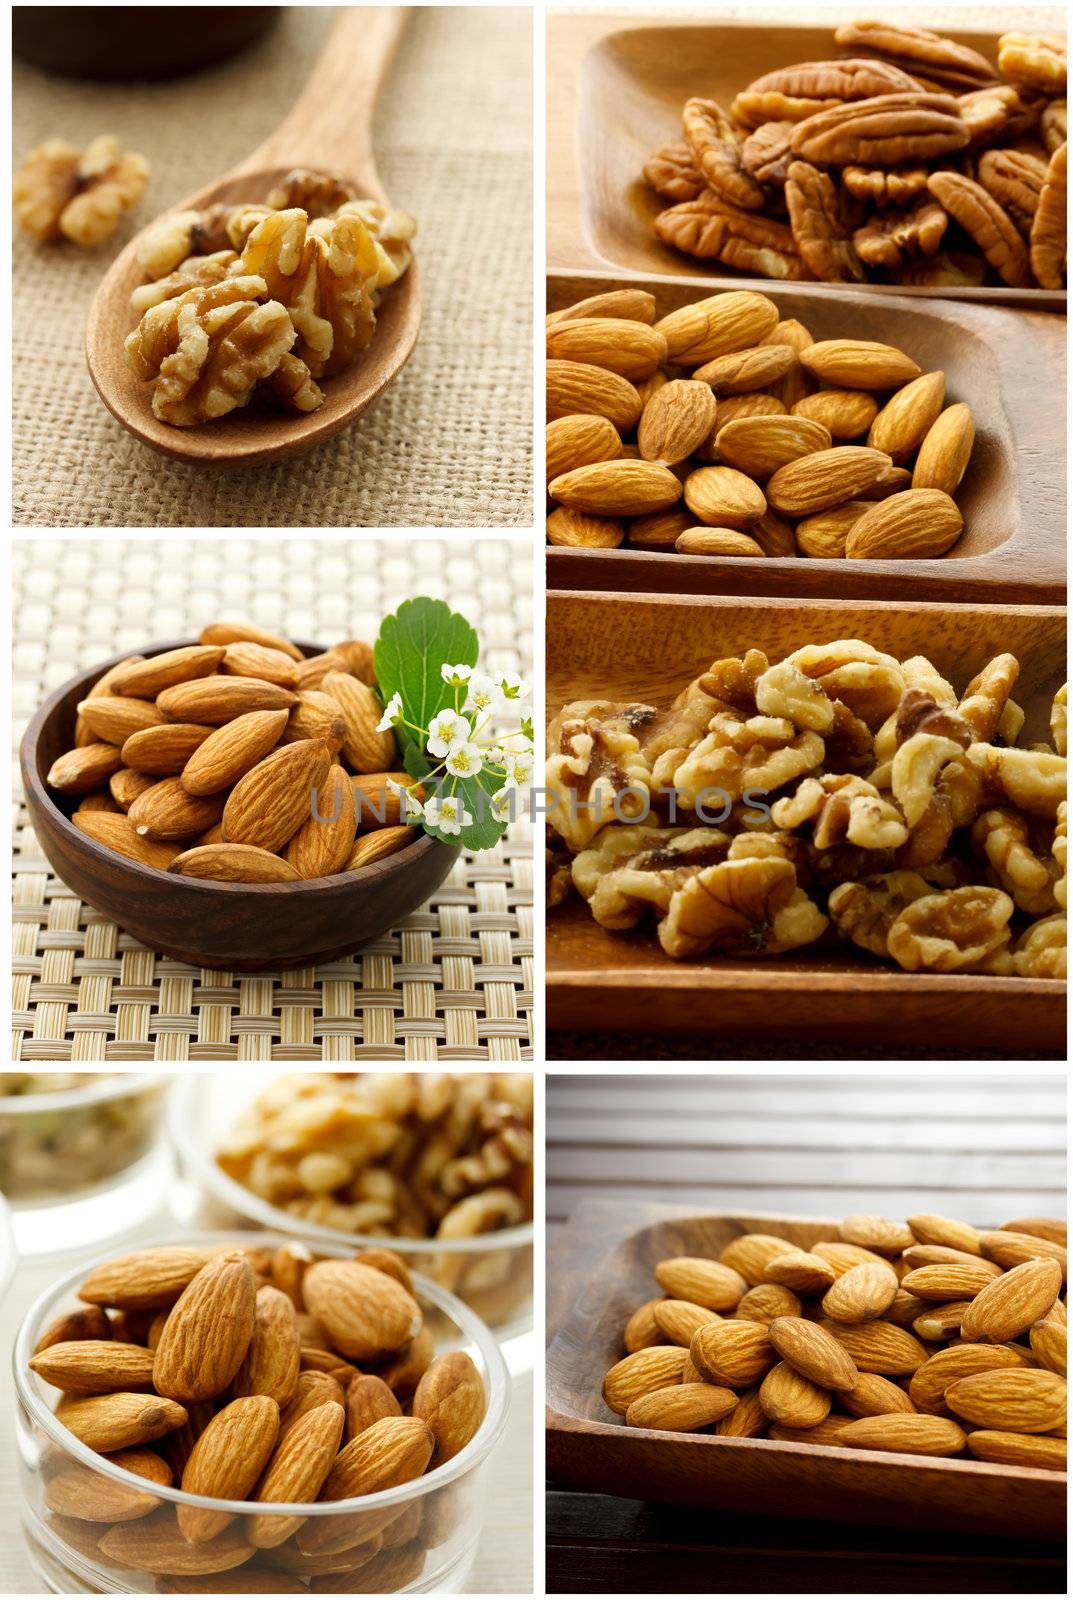 Nut Collage by melpomene